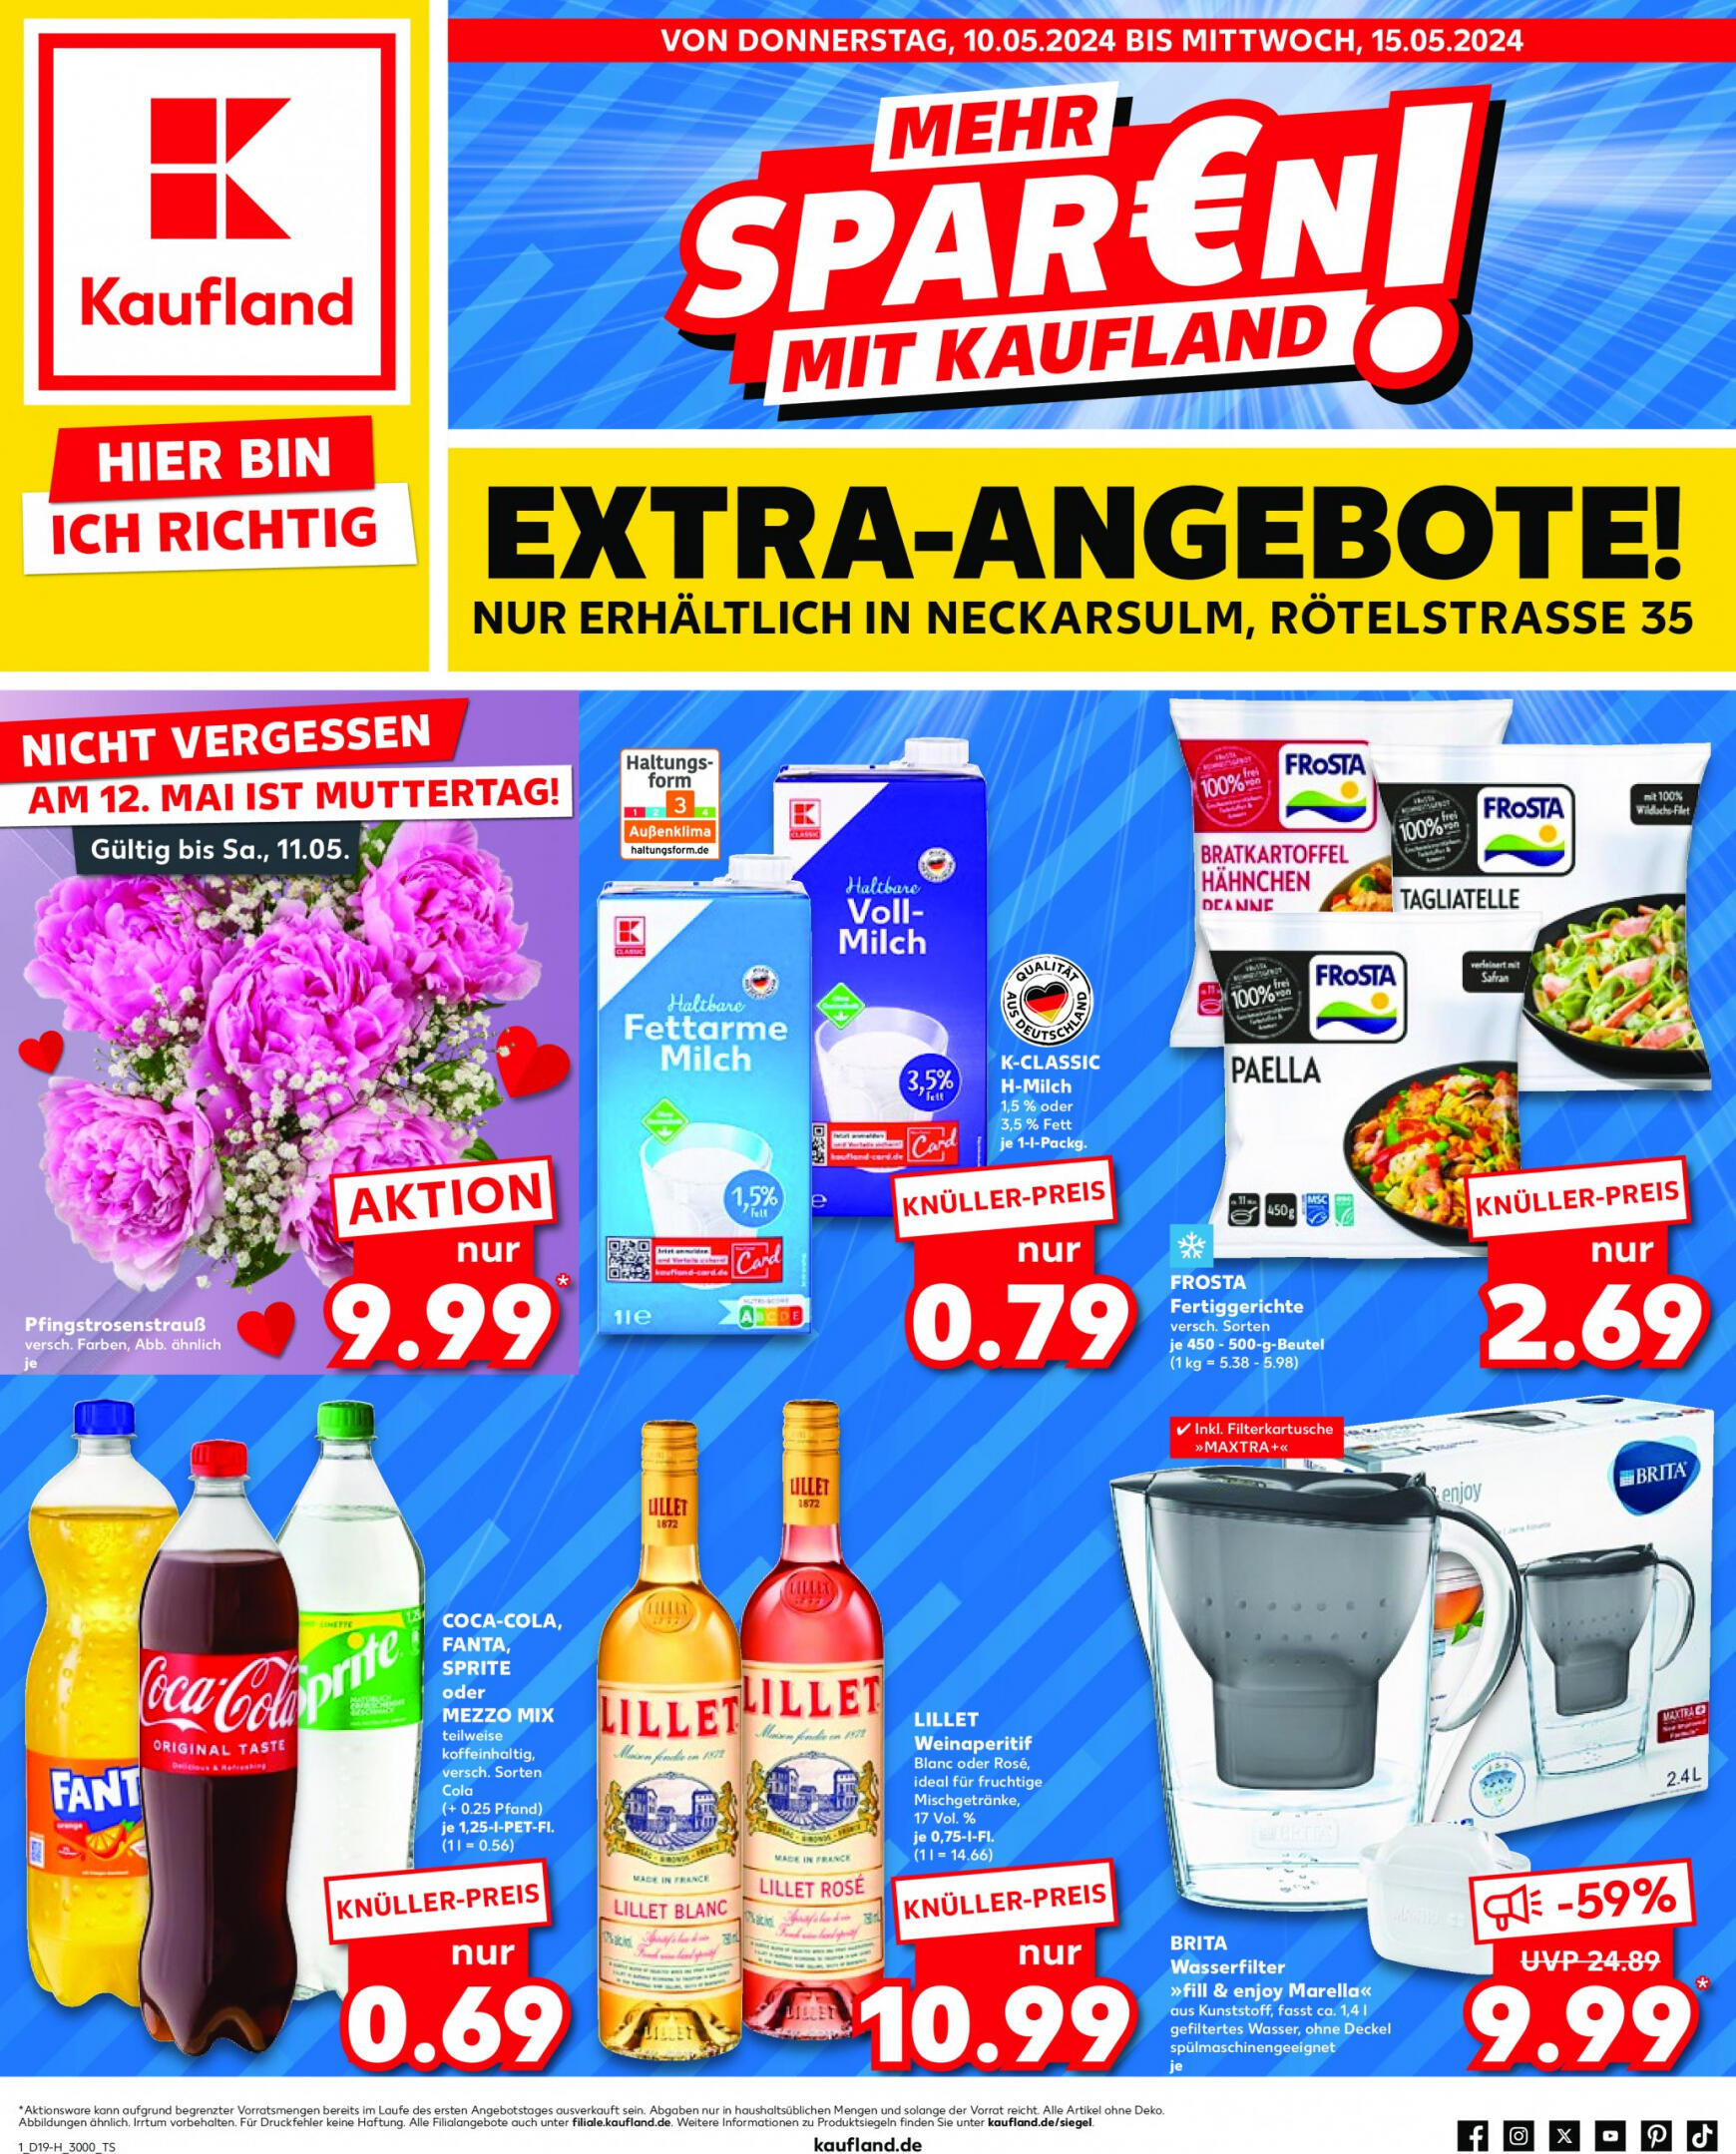 kaufland - Flyer Kaufland aktuell 10.05. - 15.05. - page: 1